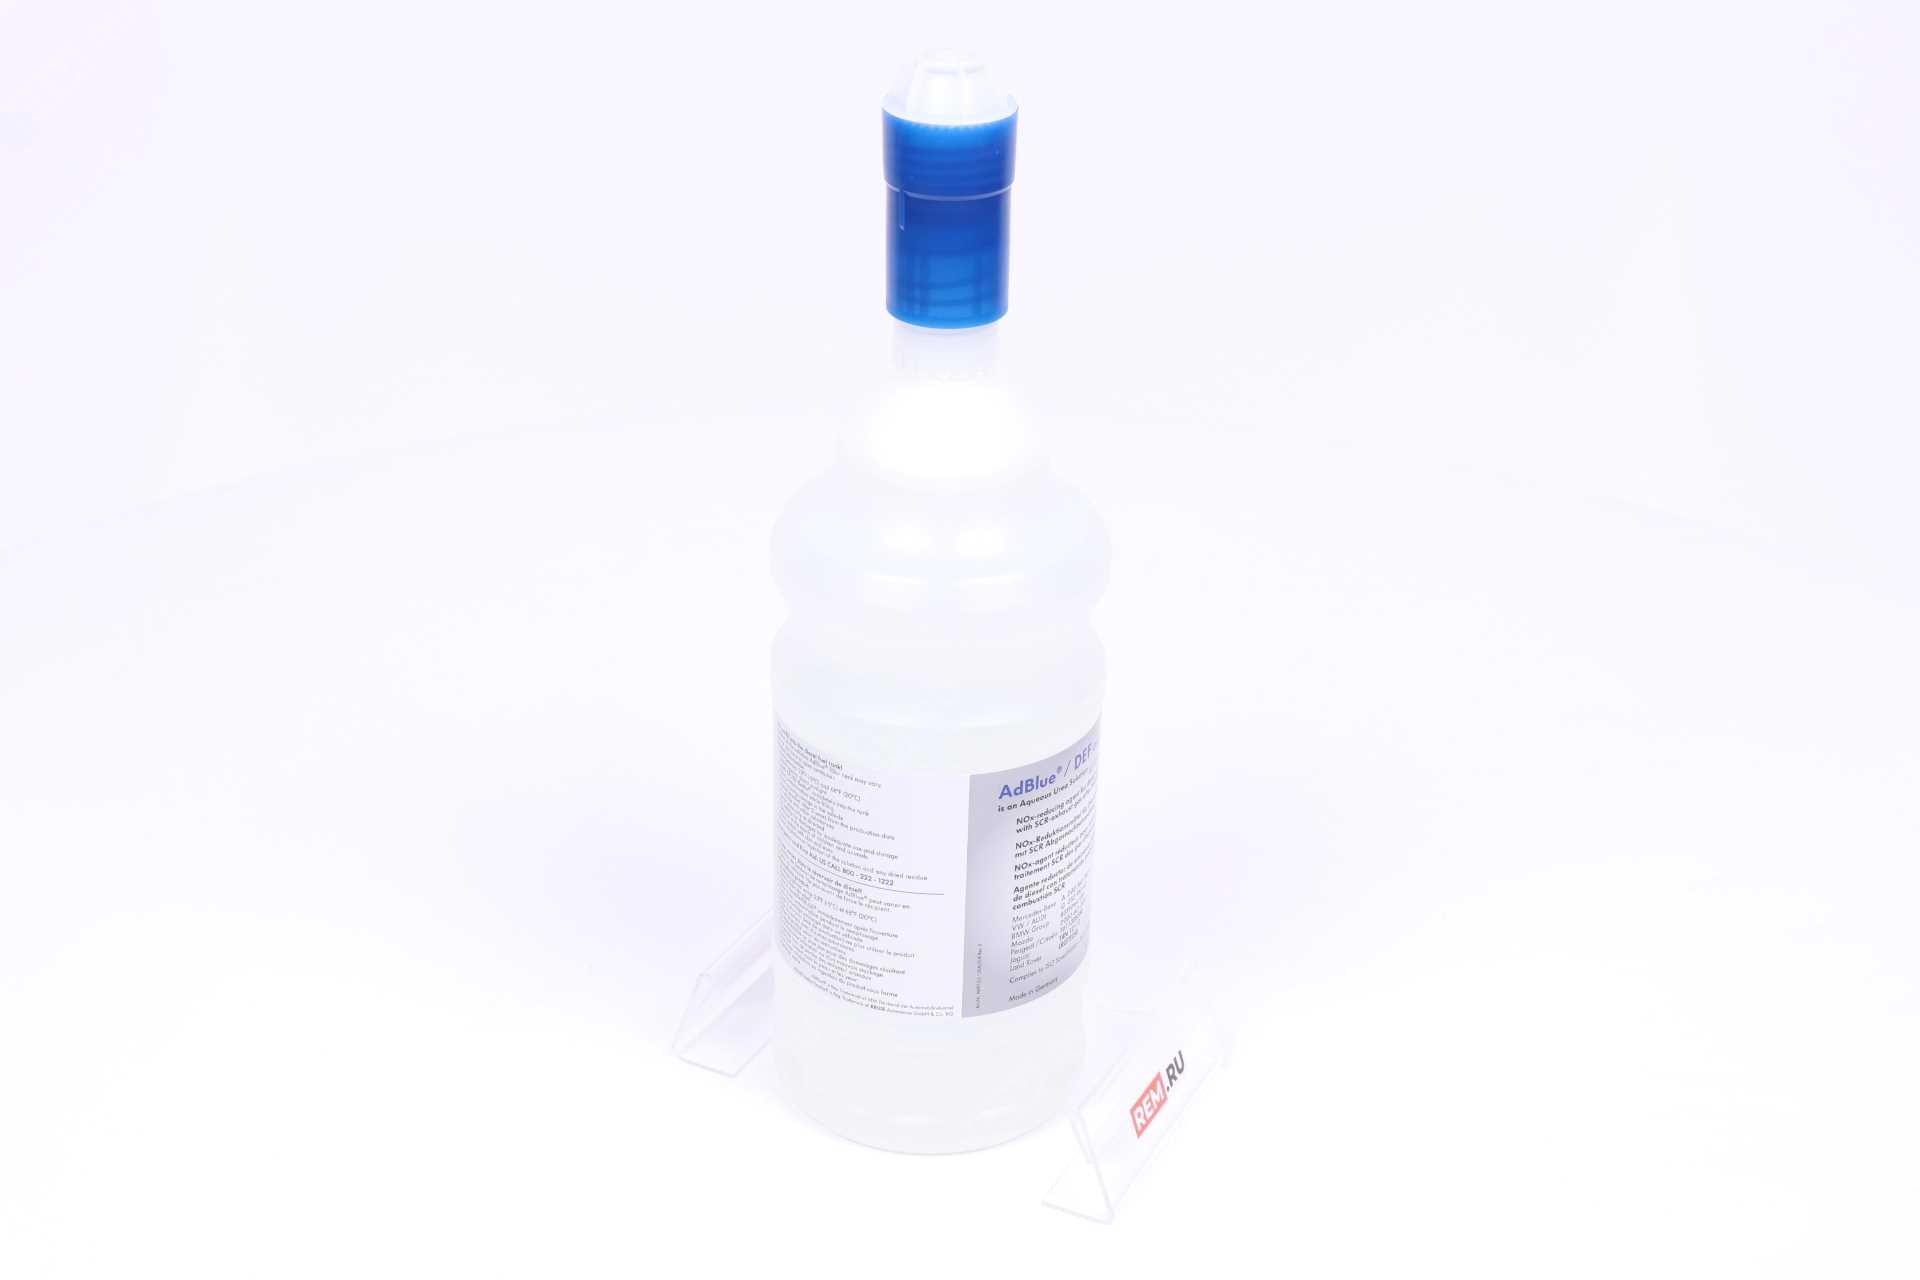  A0005830107  жидкость adblue (мочевина), 1.89л (фото 4)